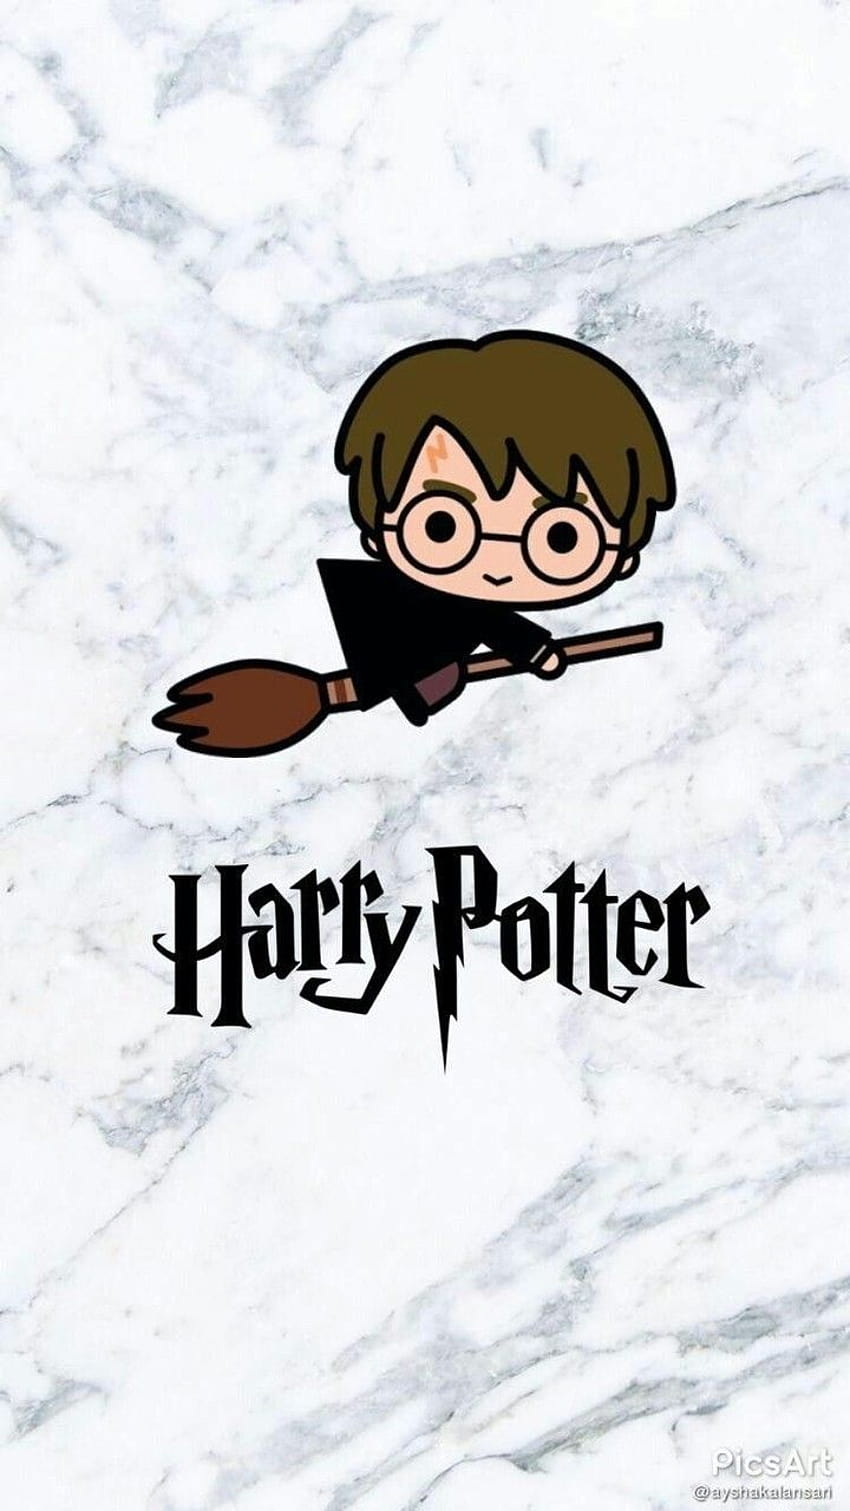 Harry potter uploaded HD wallpapers | Pxfuel